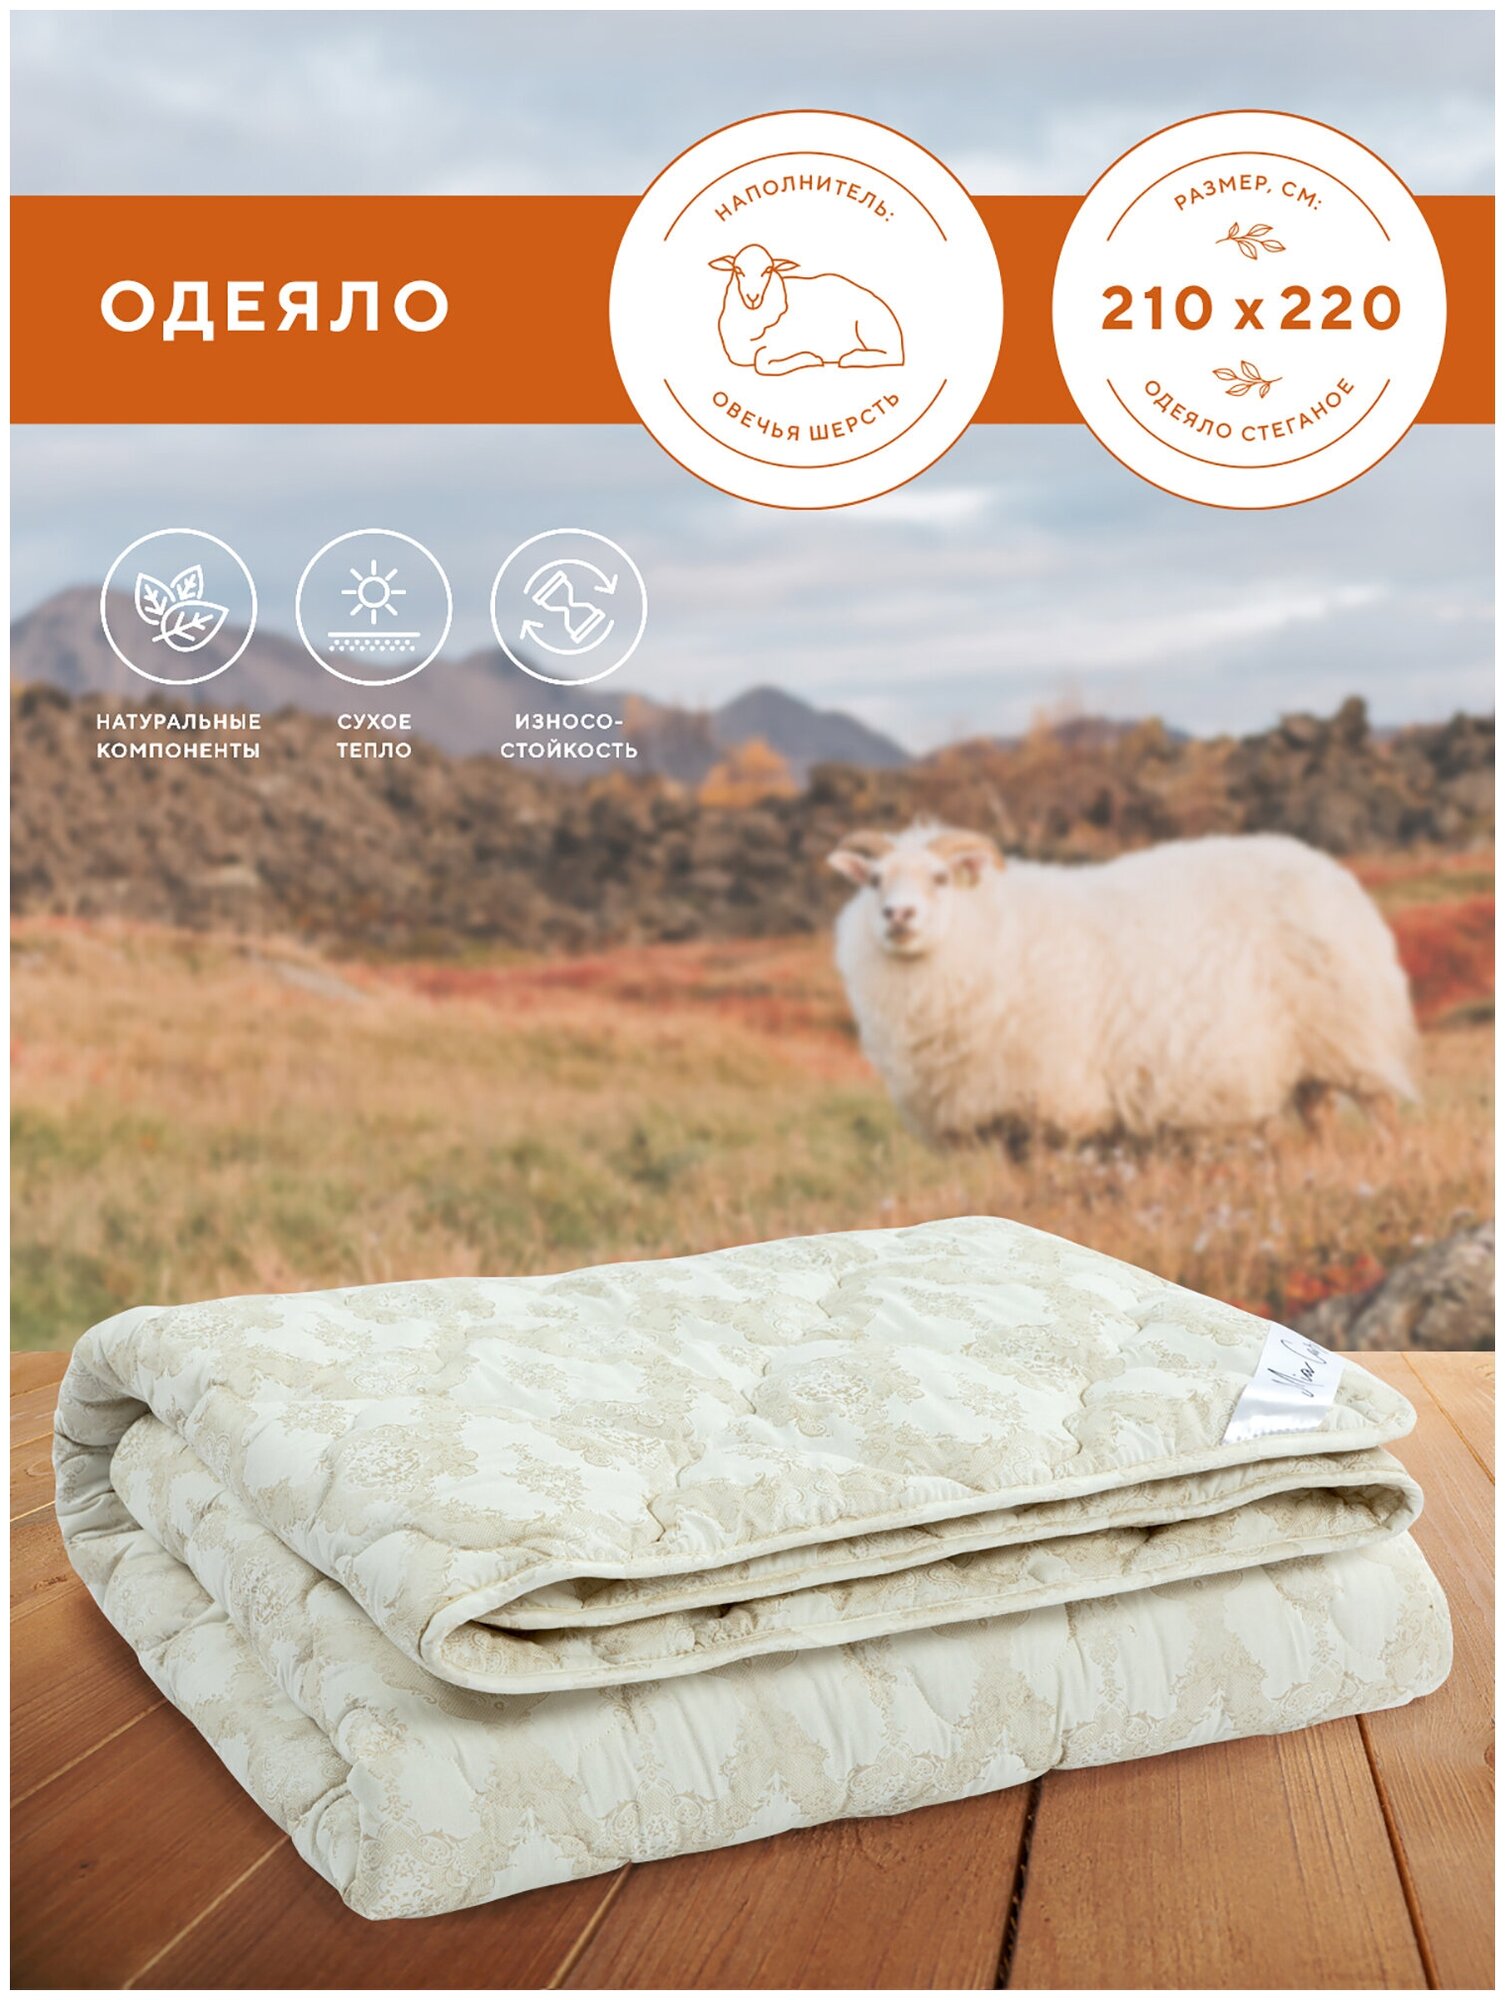 Стеганное одеяло / одеяло Евро размер / одеяло гипоаллергенное / всесезонное - с добавлением овечьей шерсти "Mia Cara" balance 210x220 рис. 0020